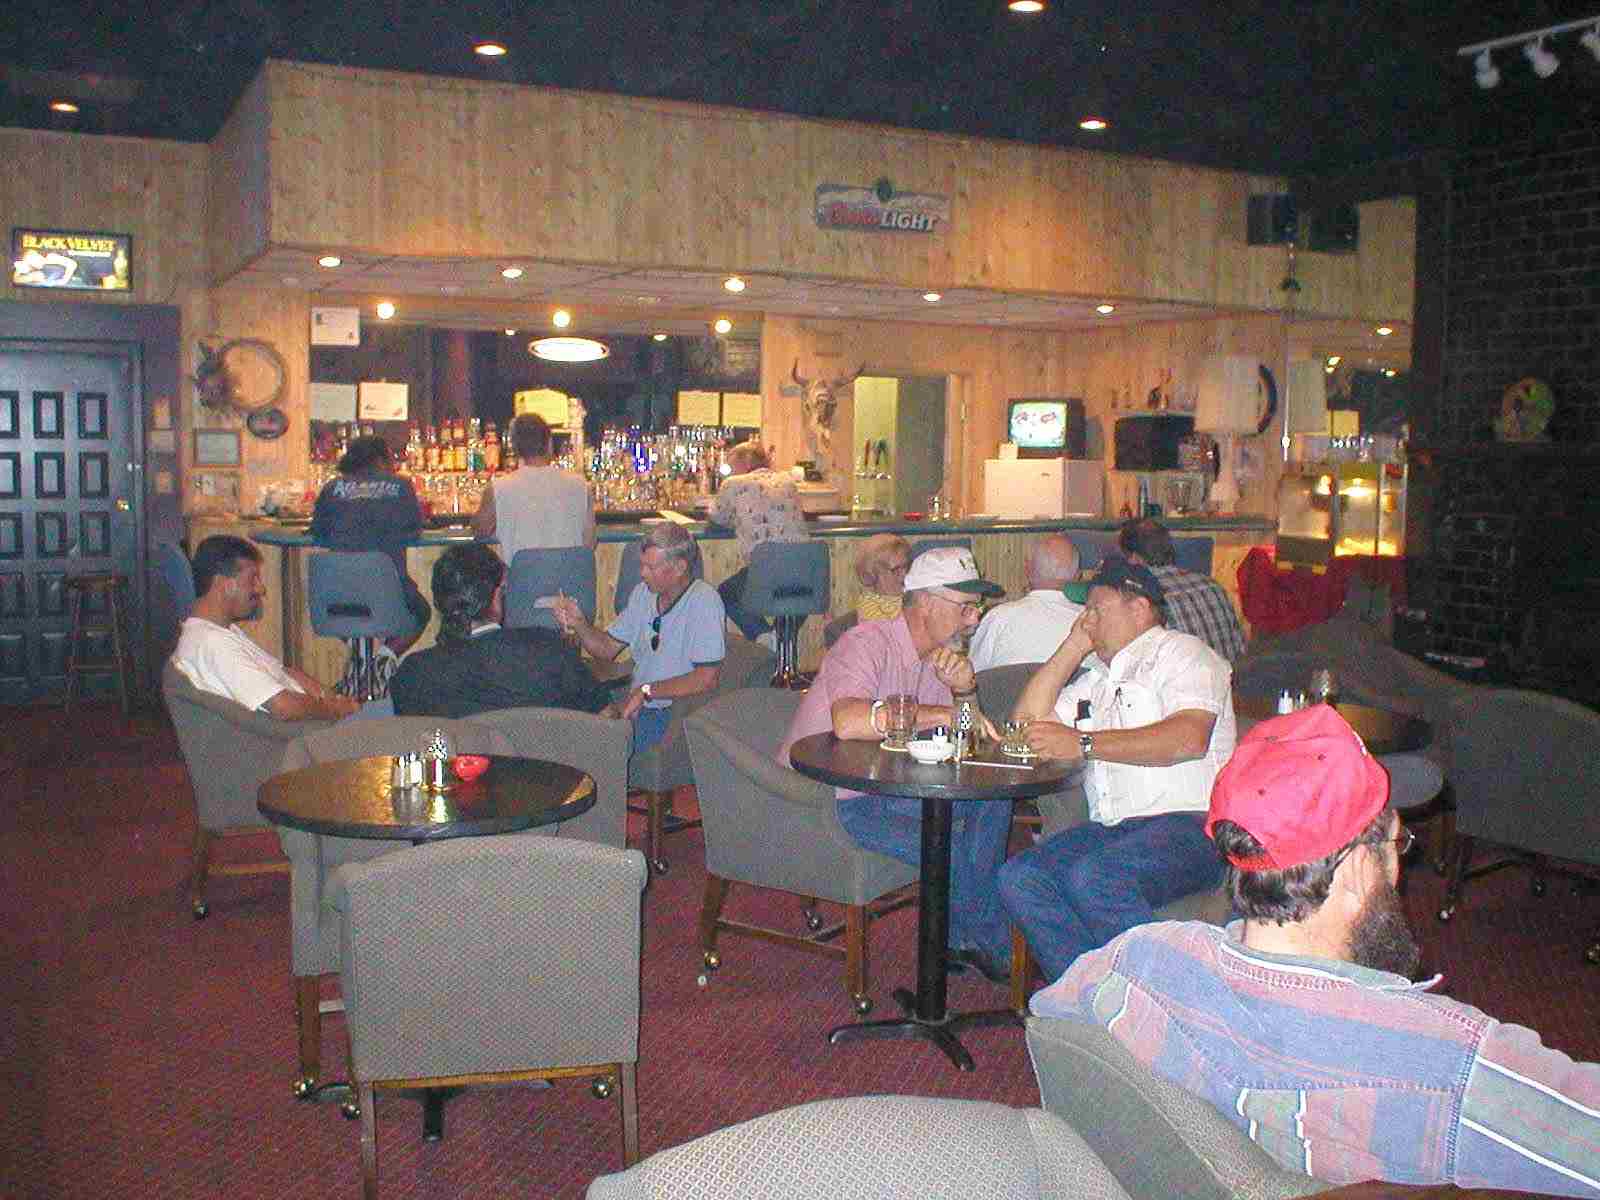 Lounge bar